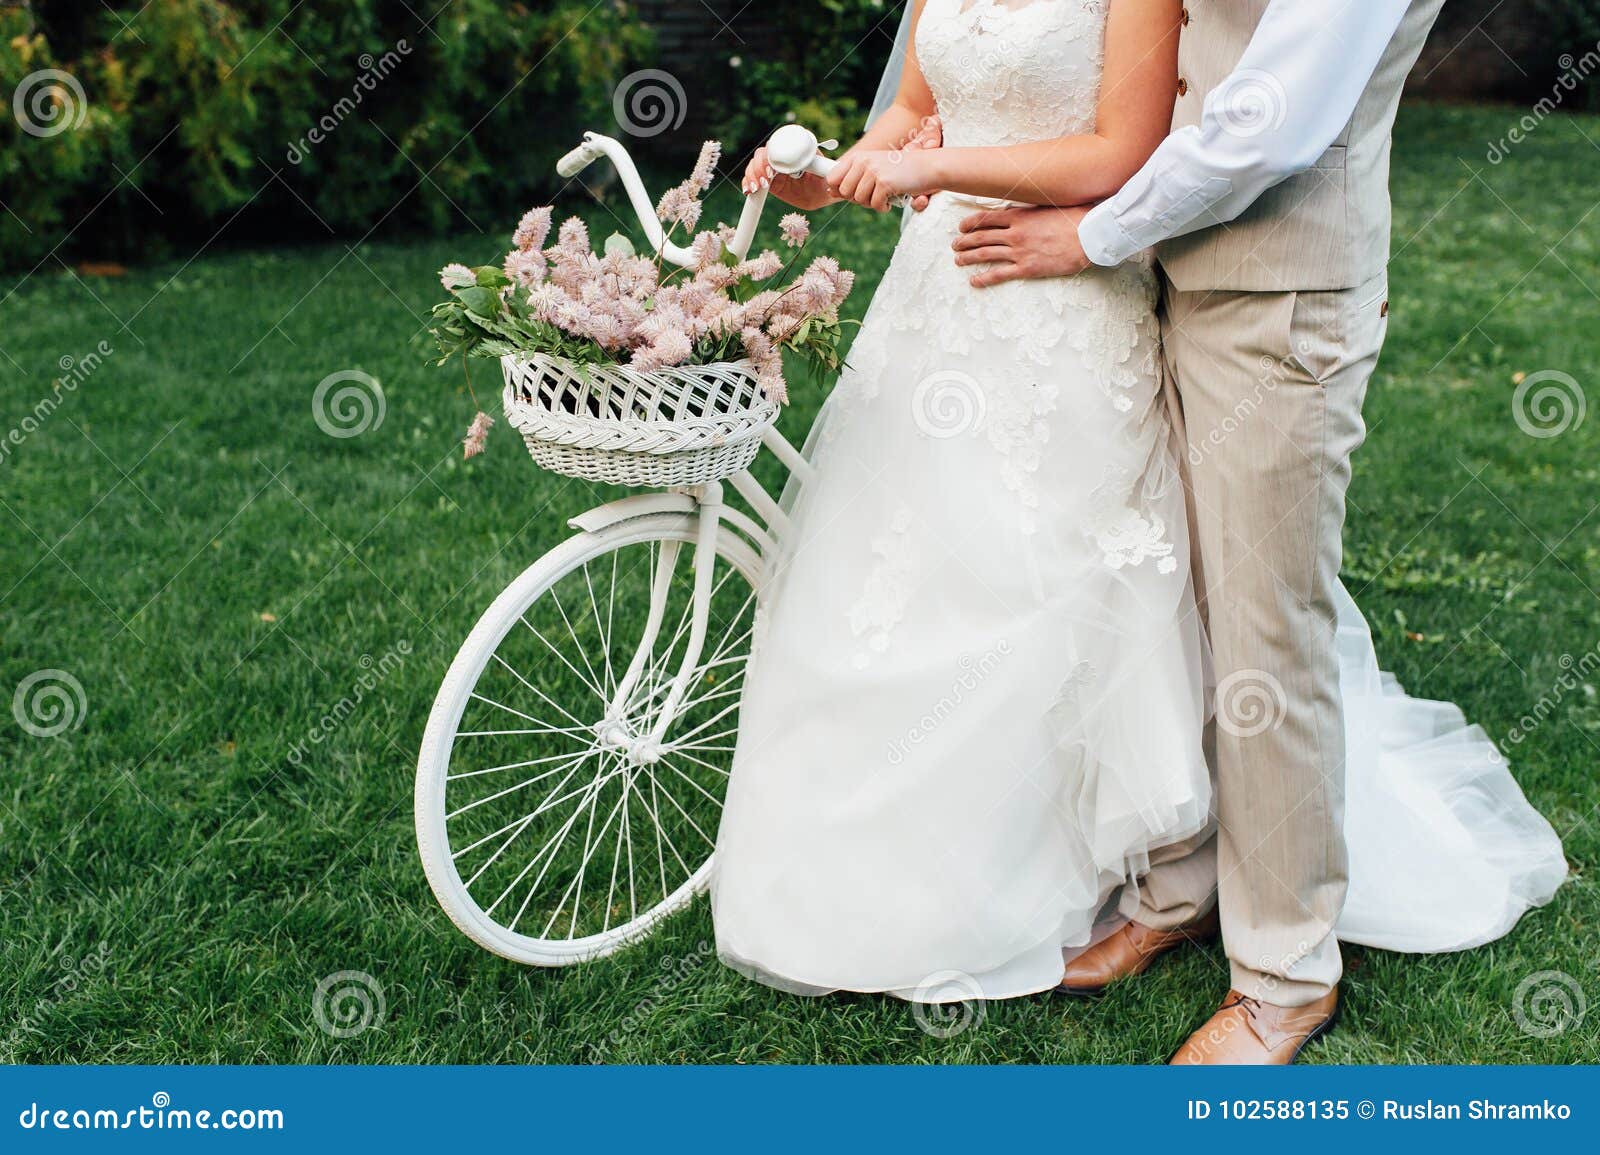 sposi in bicicletta